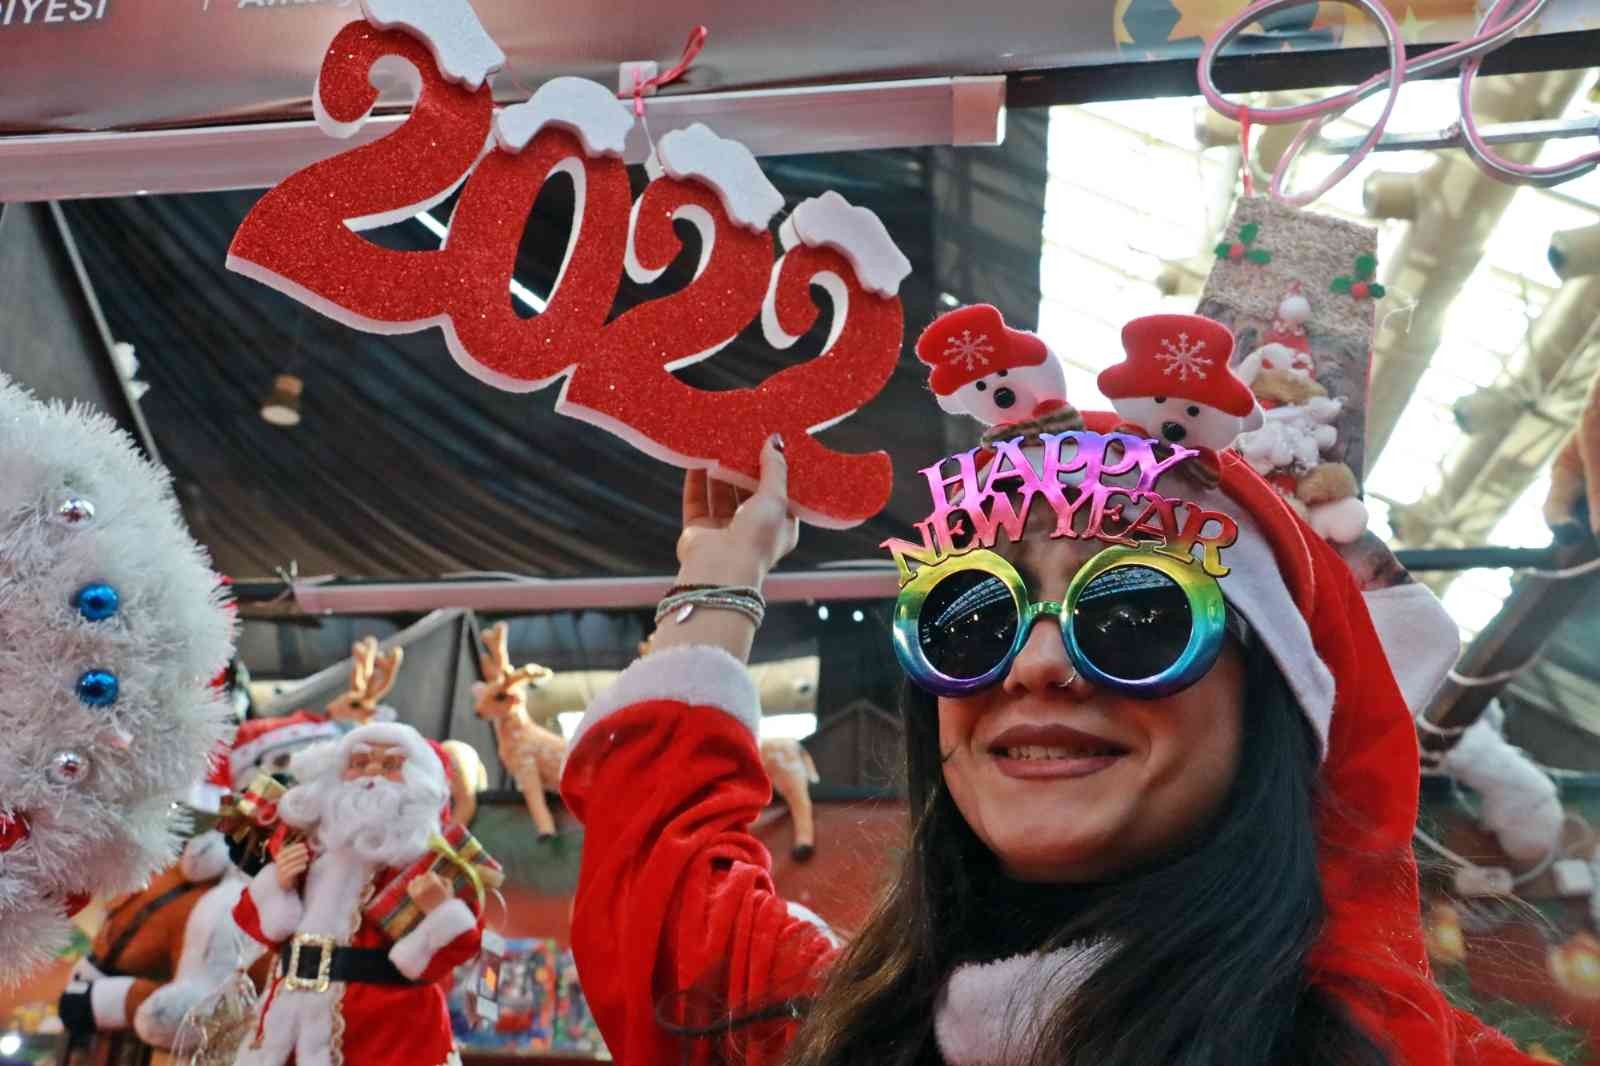 Antalya’da erken yeni yıl kutlamaları renkli görüntülere sahne oldu #antalya